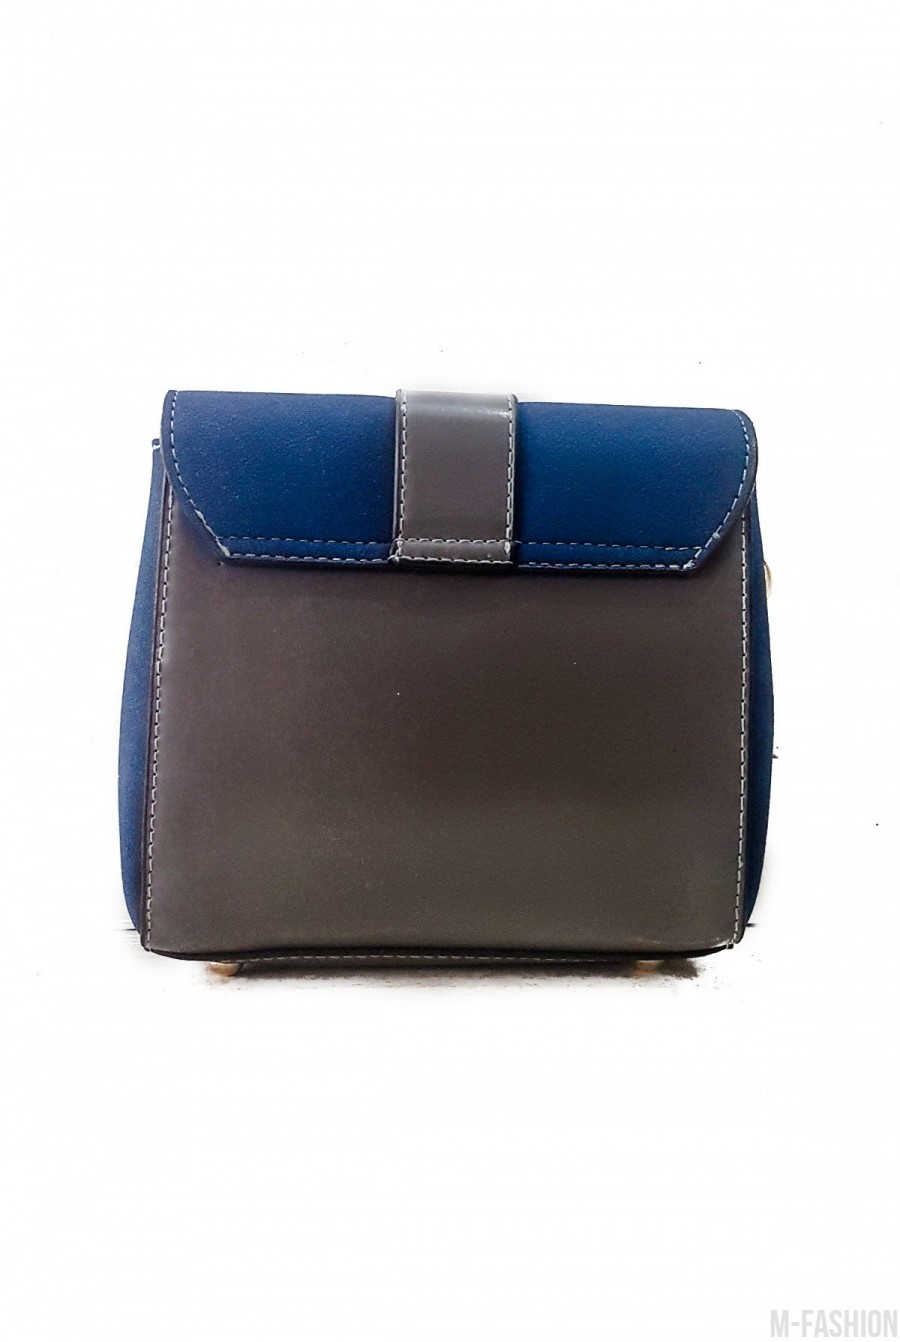 Синяя с серым лаконичная комбинированная женская сумочка- Фото 3